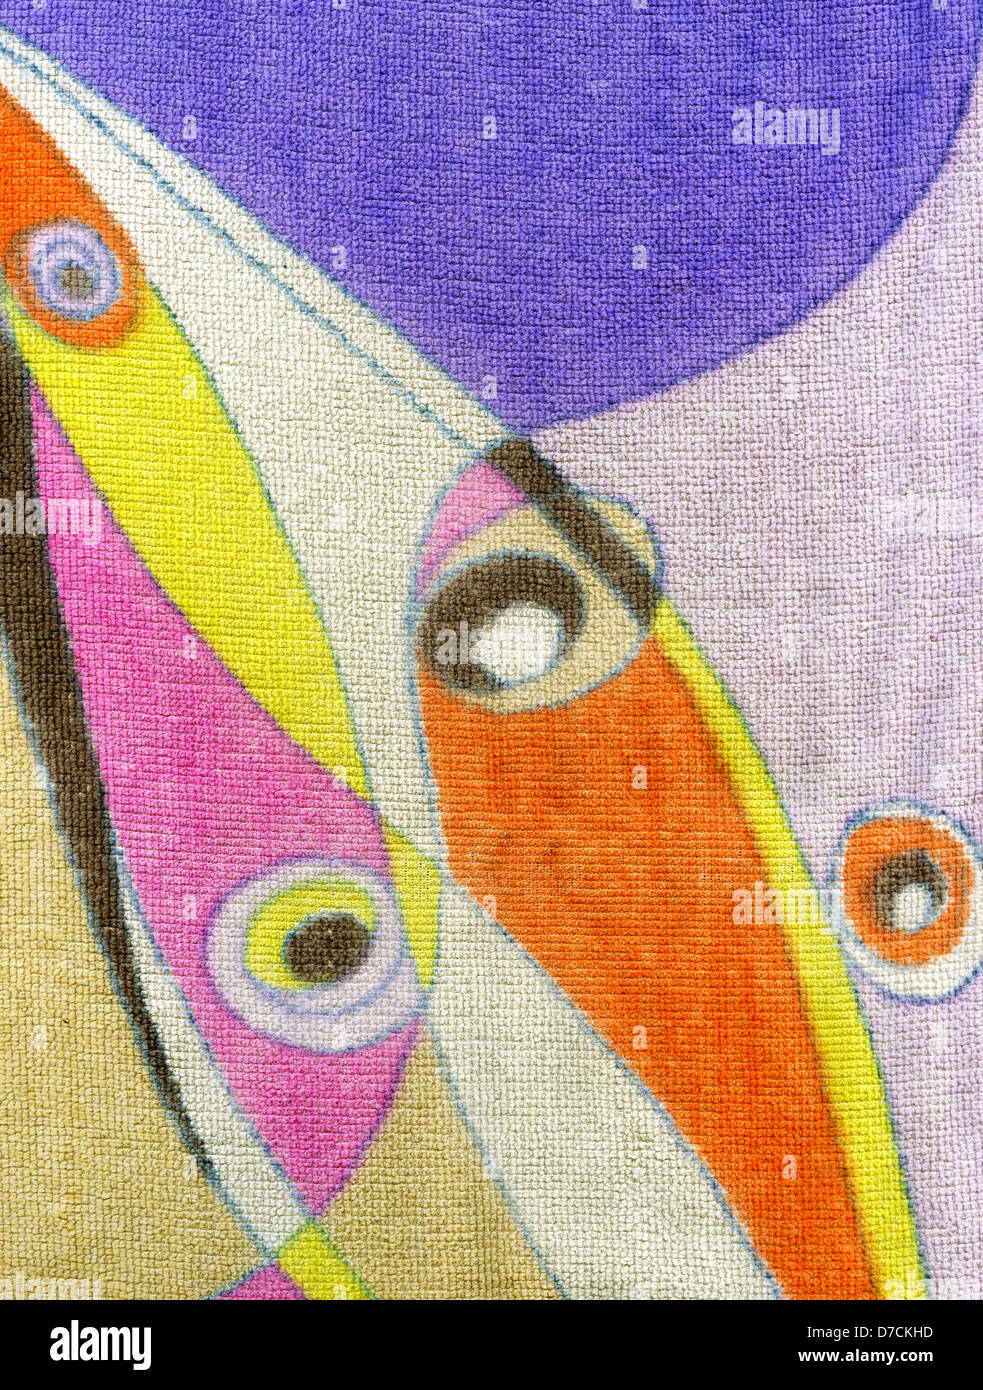 Alta risoluzione close up di un colorato abstract asciugamano inumidito. Acquisite a 1200dpi utilizzando un professionista Epson V700 scanner. Foto Stock